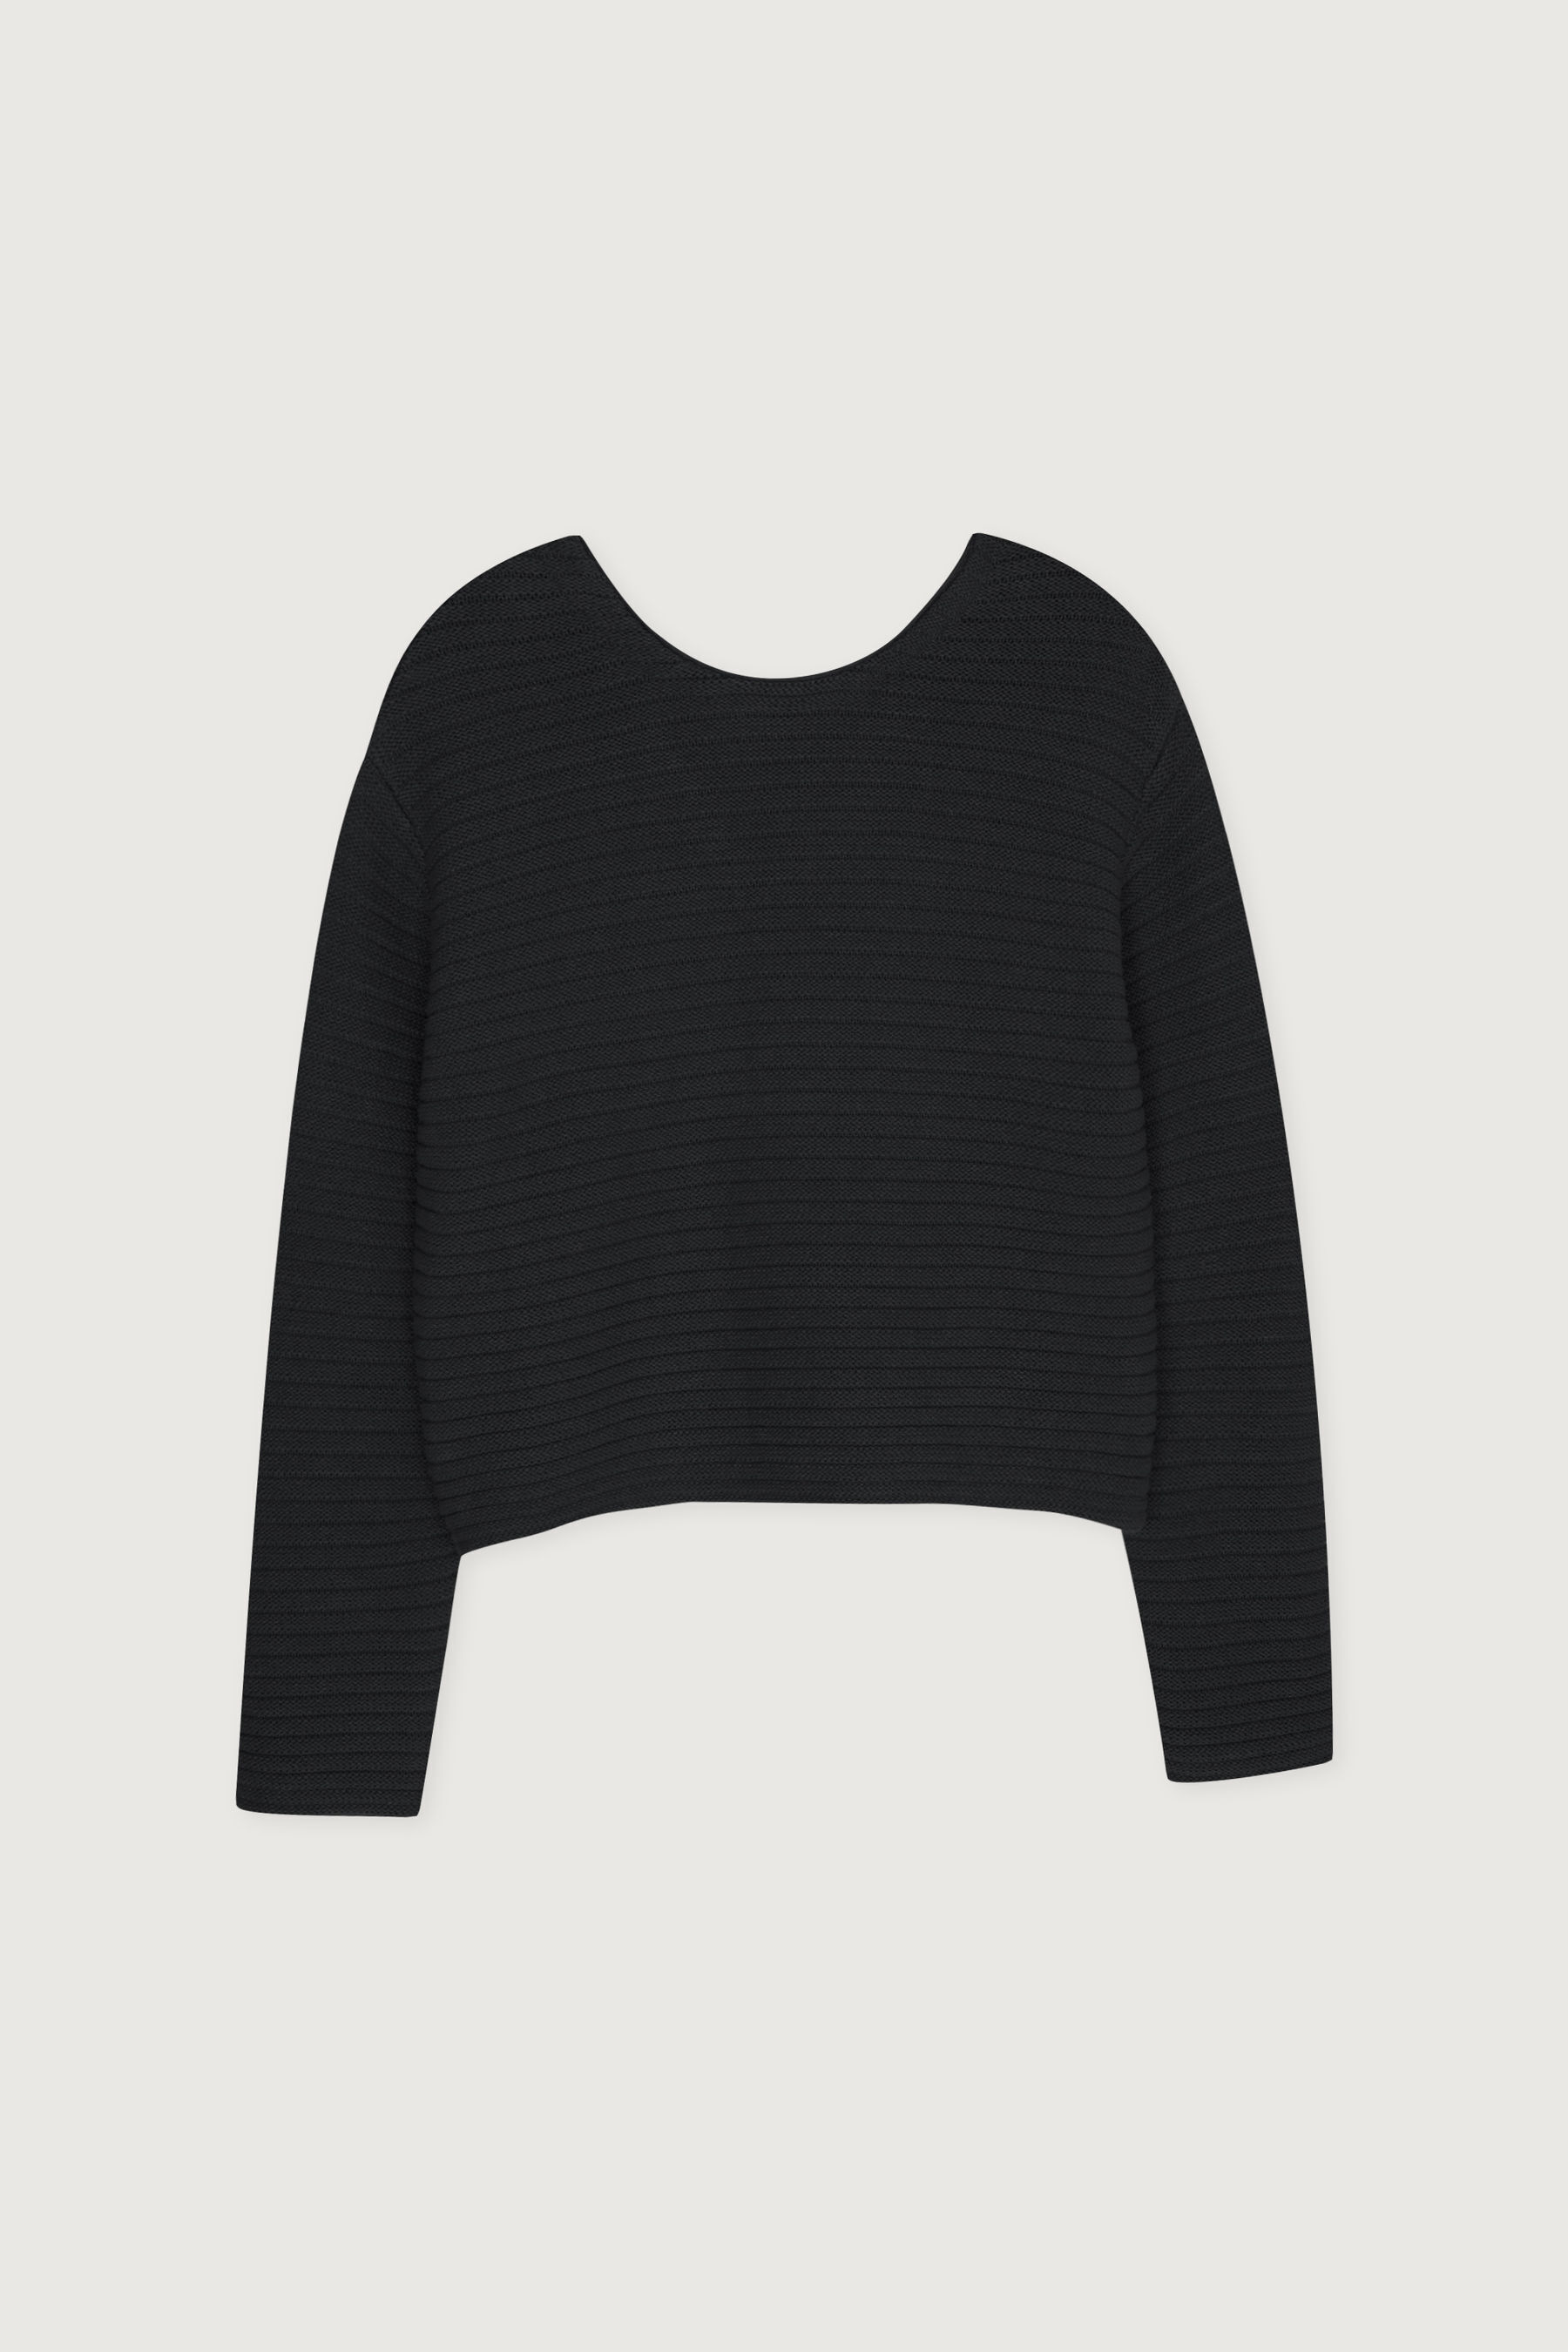 Sweater 4592 | OAK + FORT